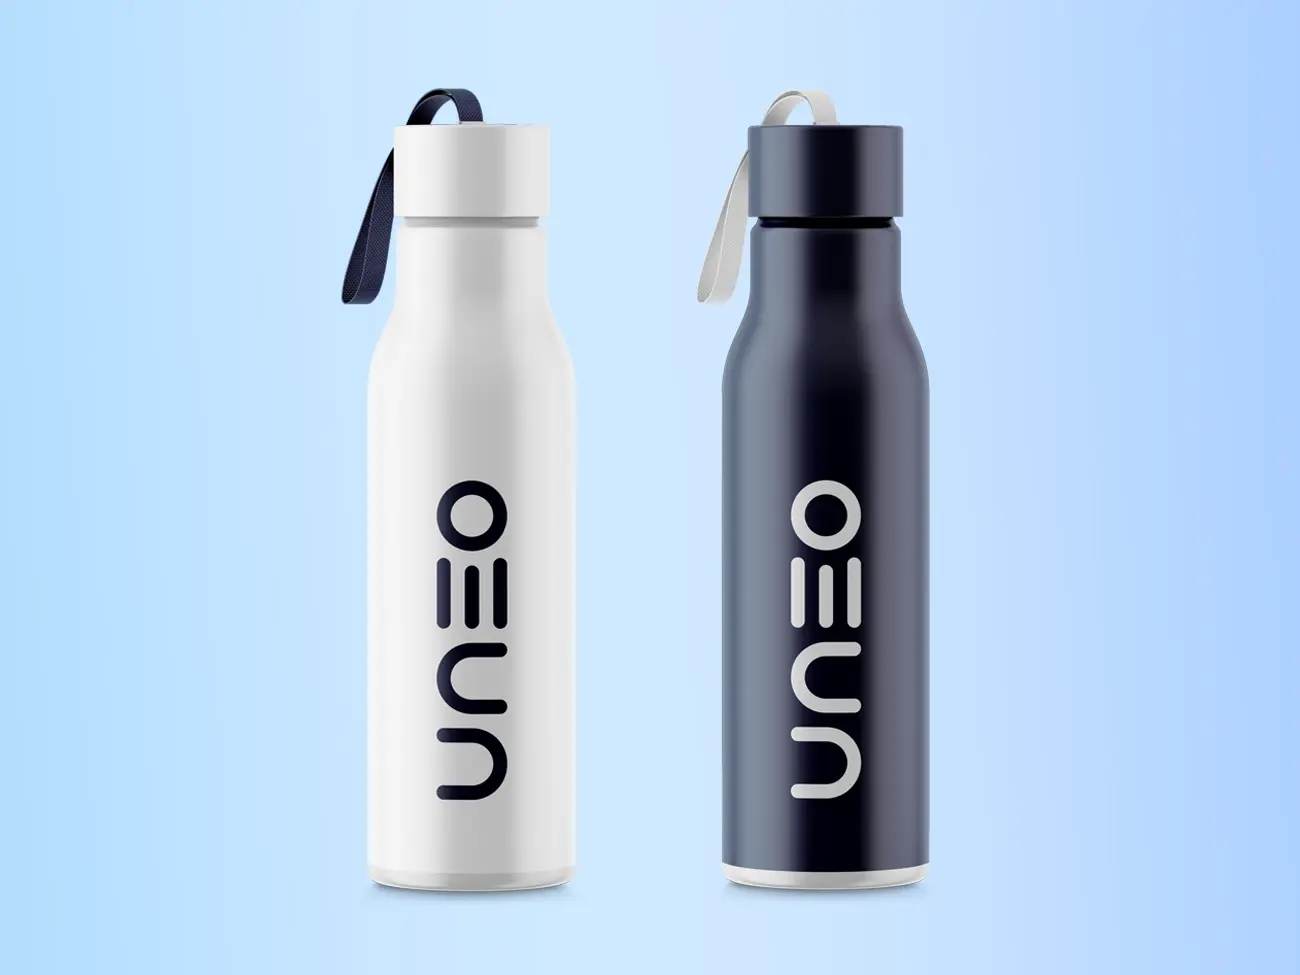 byggefirmaet uneos logo på drikkedunke